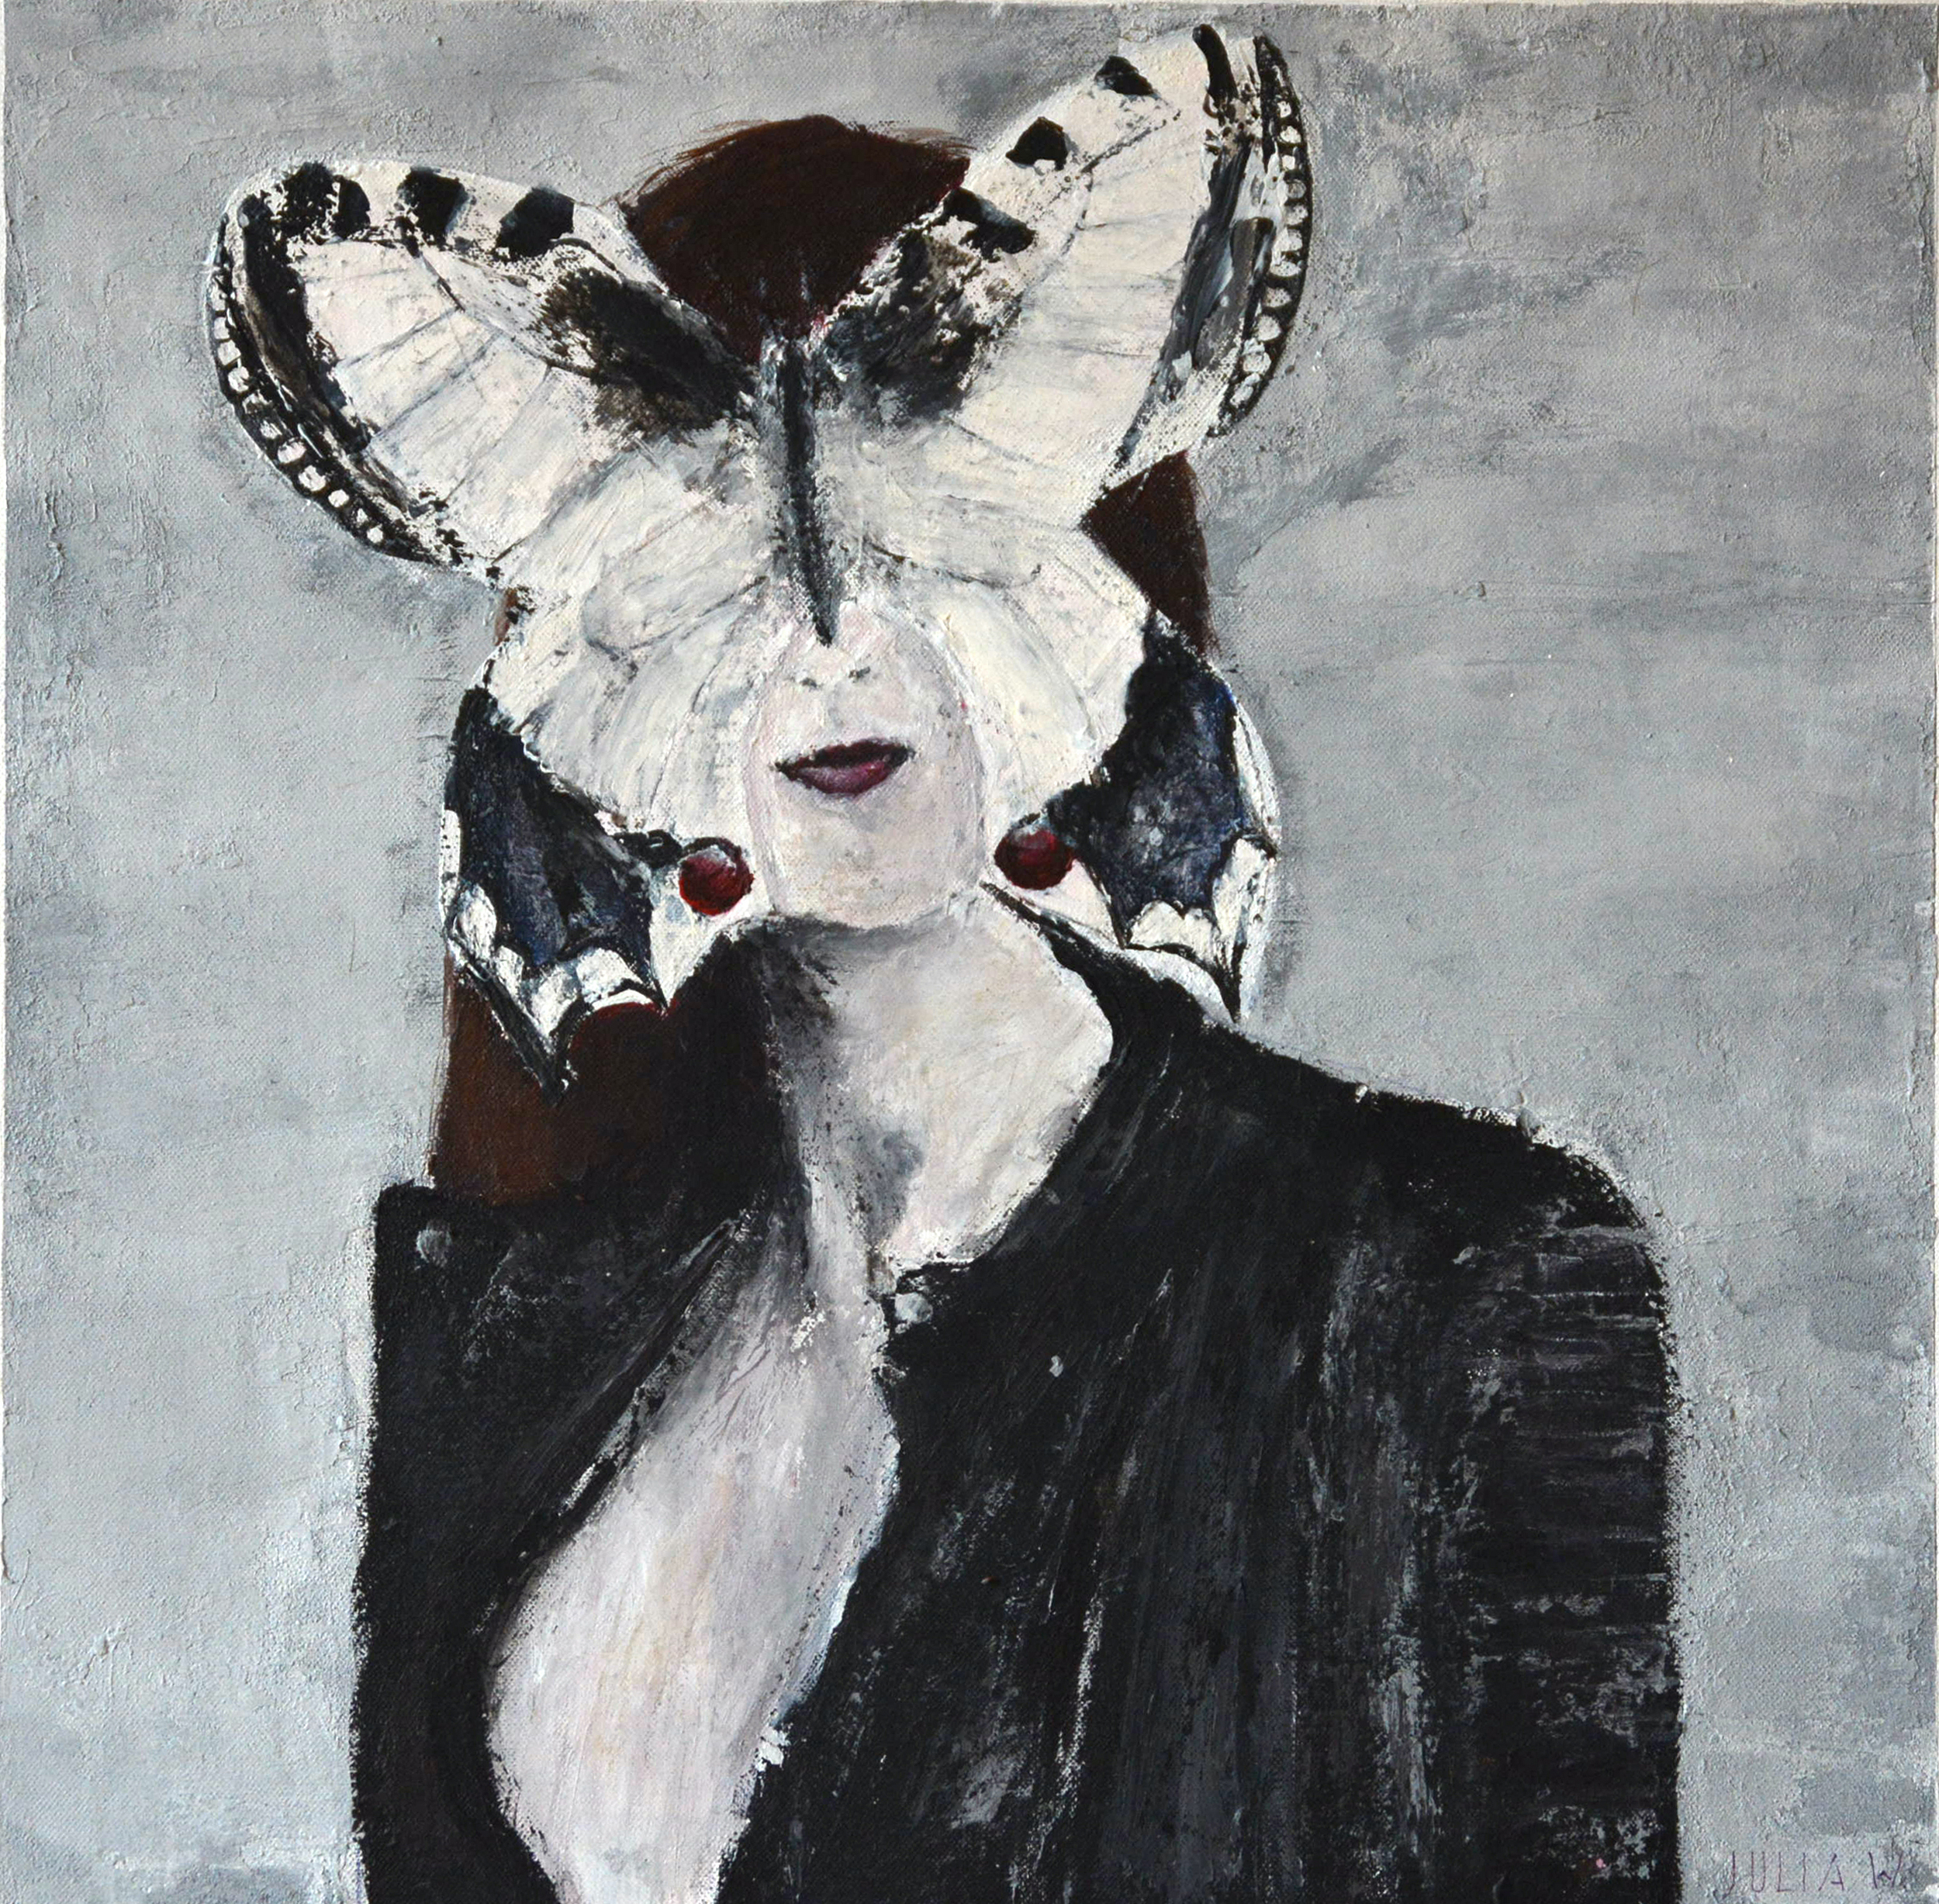 METAMORPHOSE - Acryl auf Leinwand - 50x50cm - ein Portrait einer jungen Frau mit einem surrealistisch großen Schmetterling vor ihrem Gesicht.